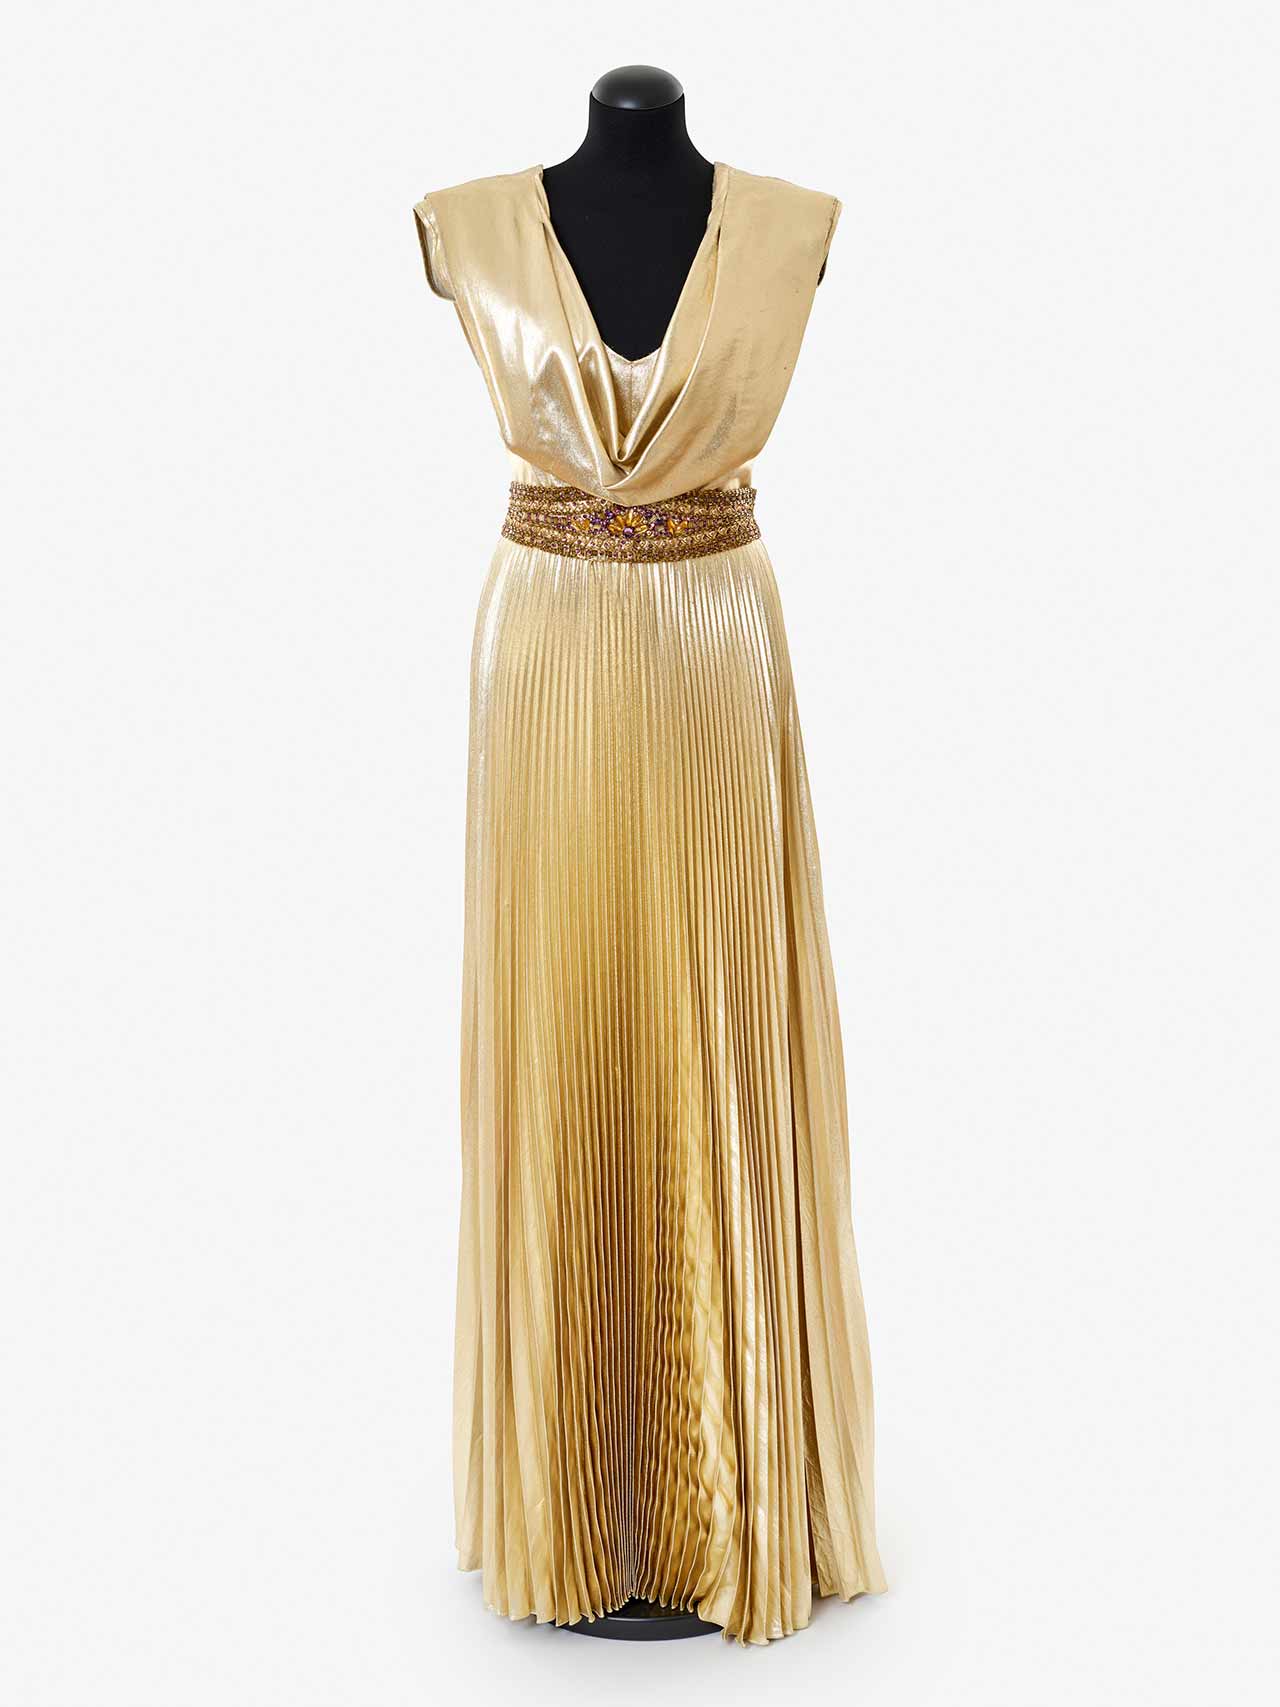 Das Foto zeigt ein langes Goldlamée Kleid aus Kessler Kabarett Show